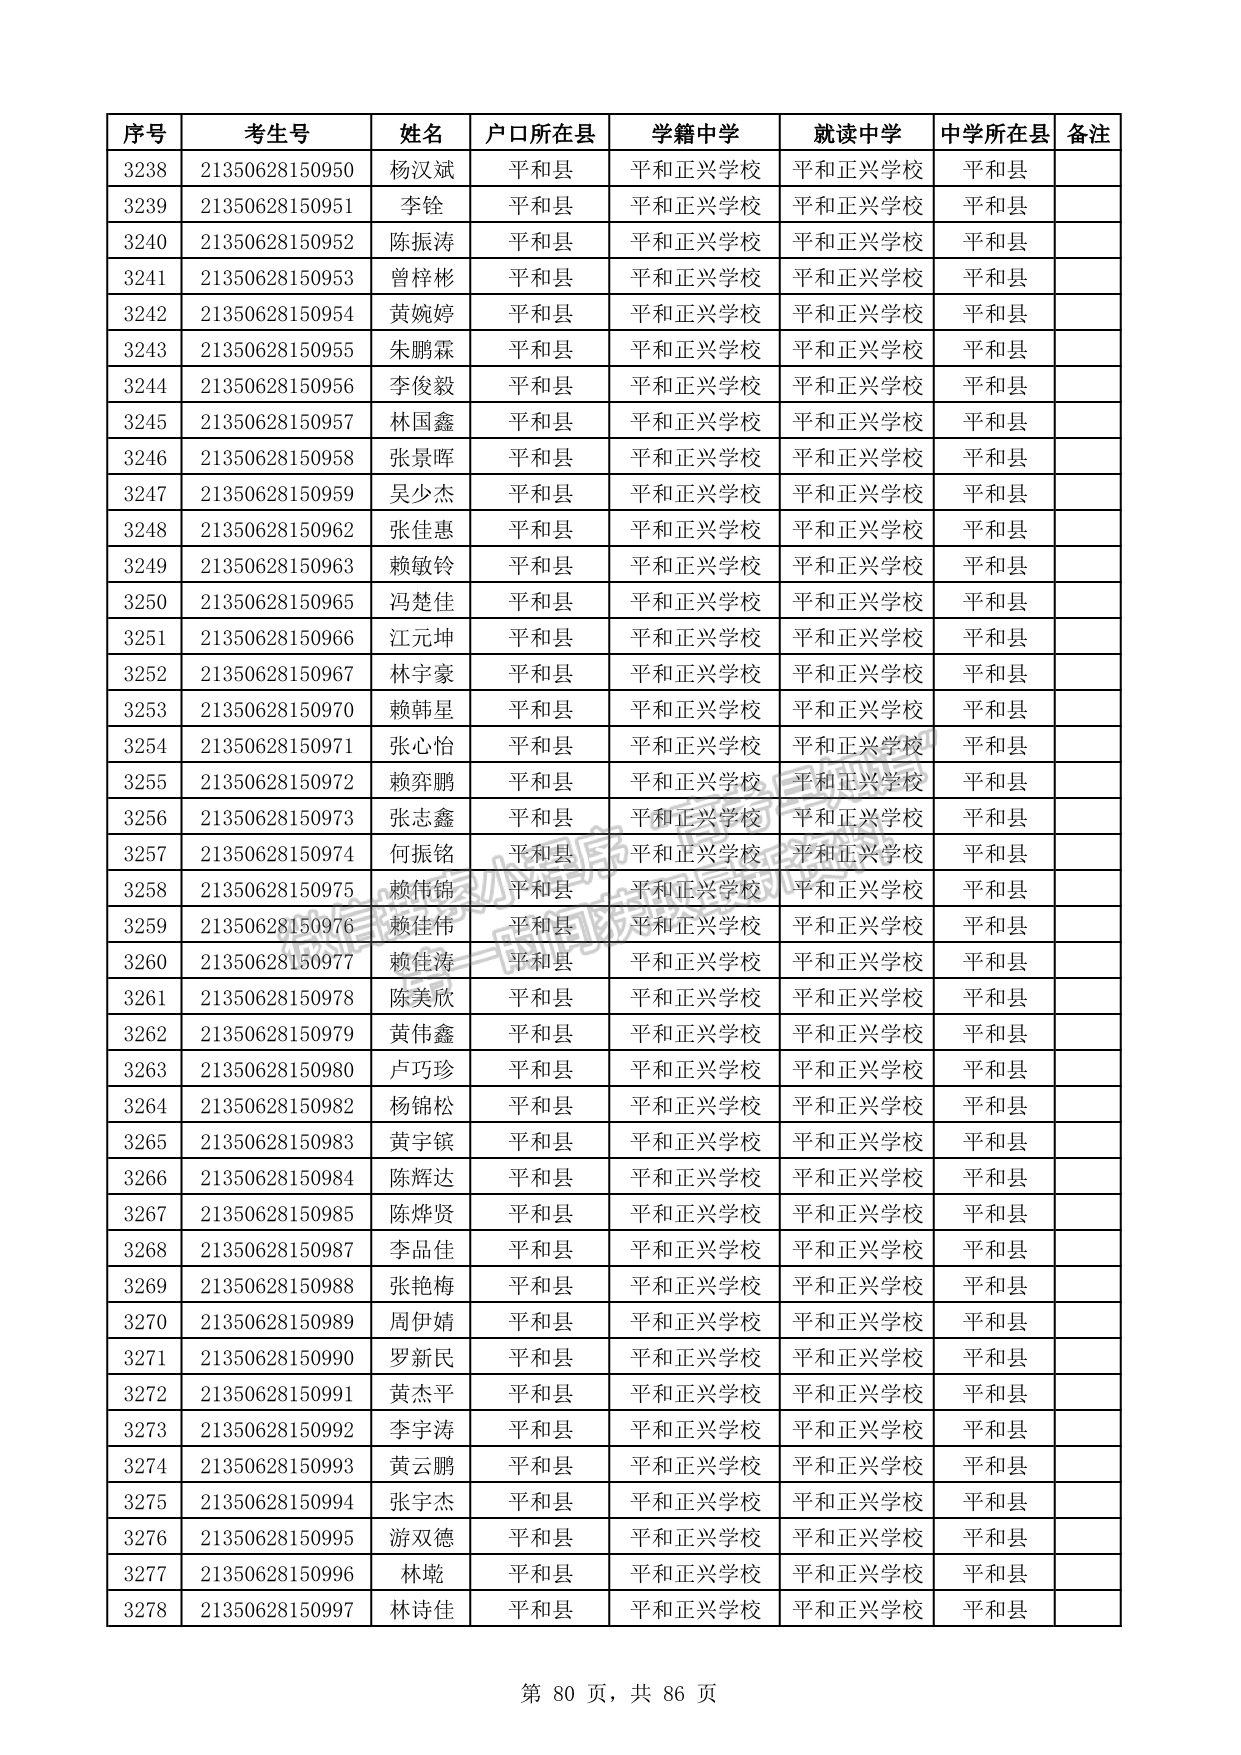 漳州市2021年普通高考地方专项计划资格考生名单公示